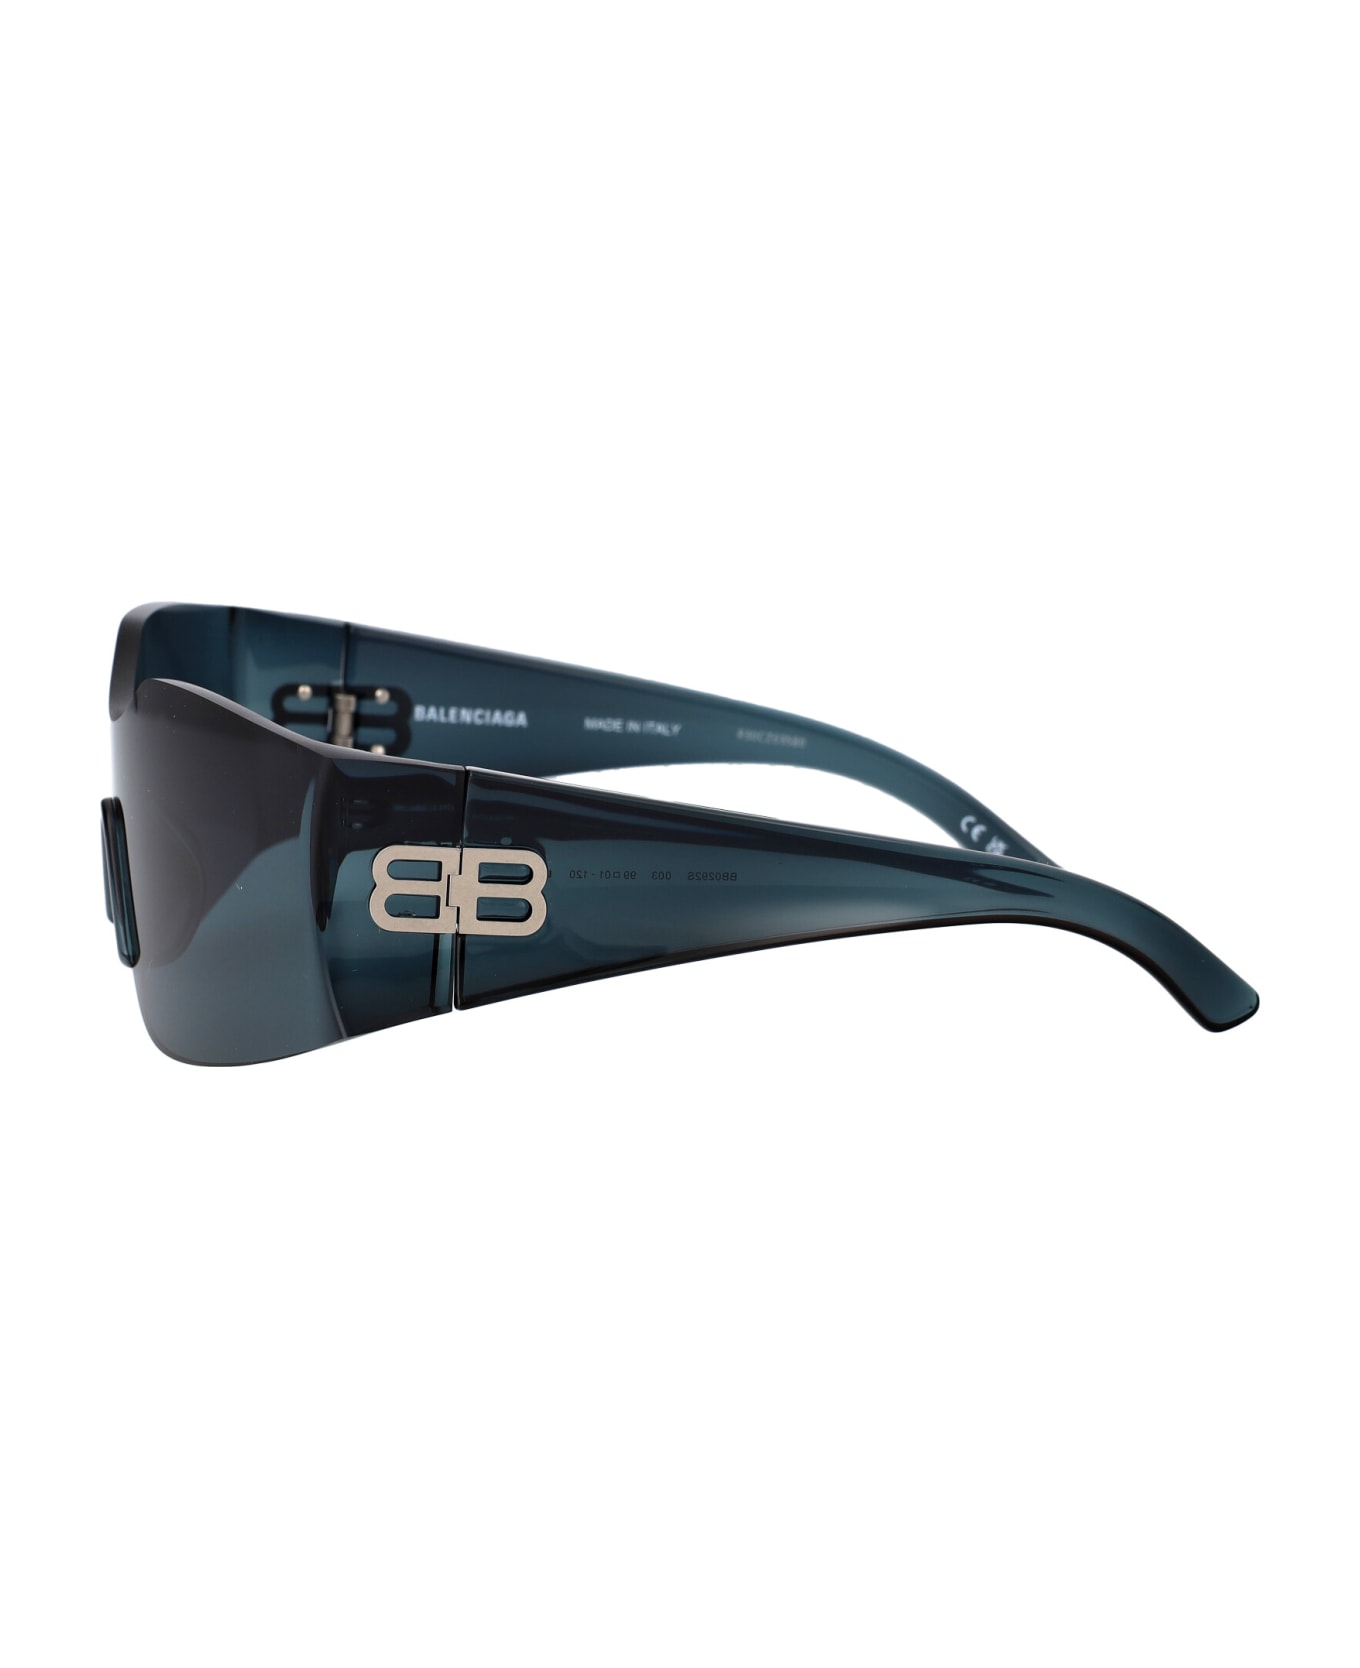 Balenciaga Eyewear Bb0292s Sunglasses - 003 GREEN GREEN GREEN